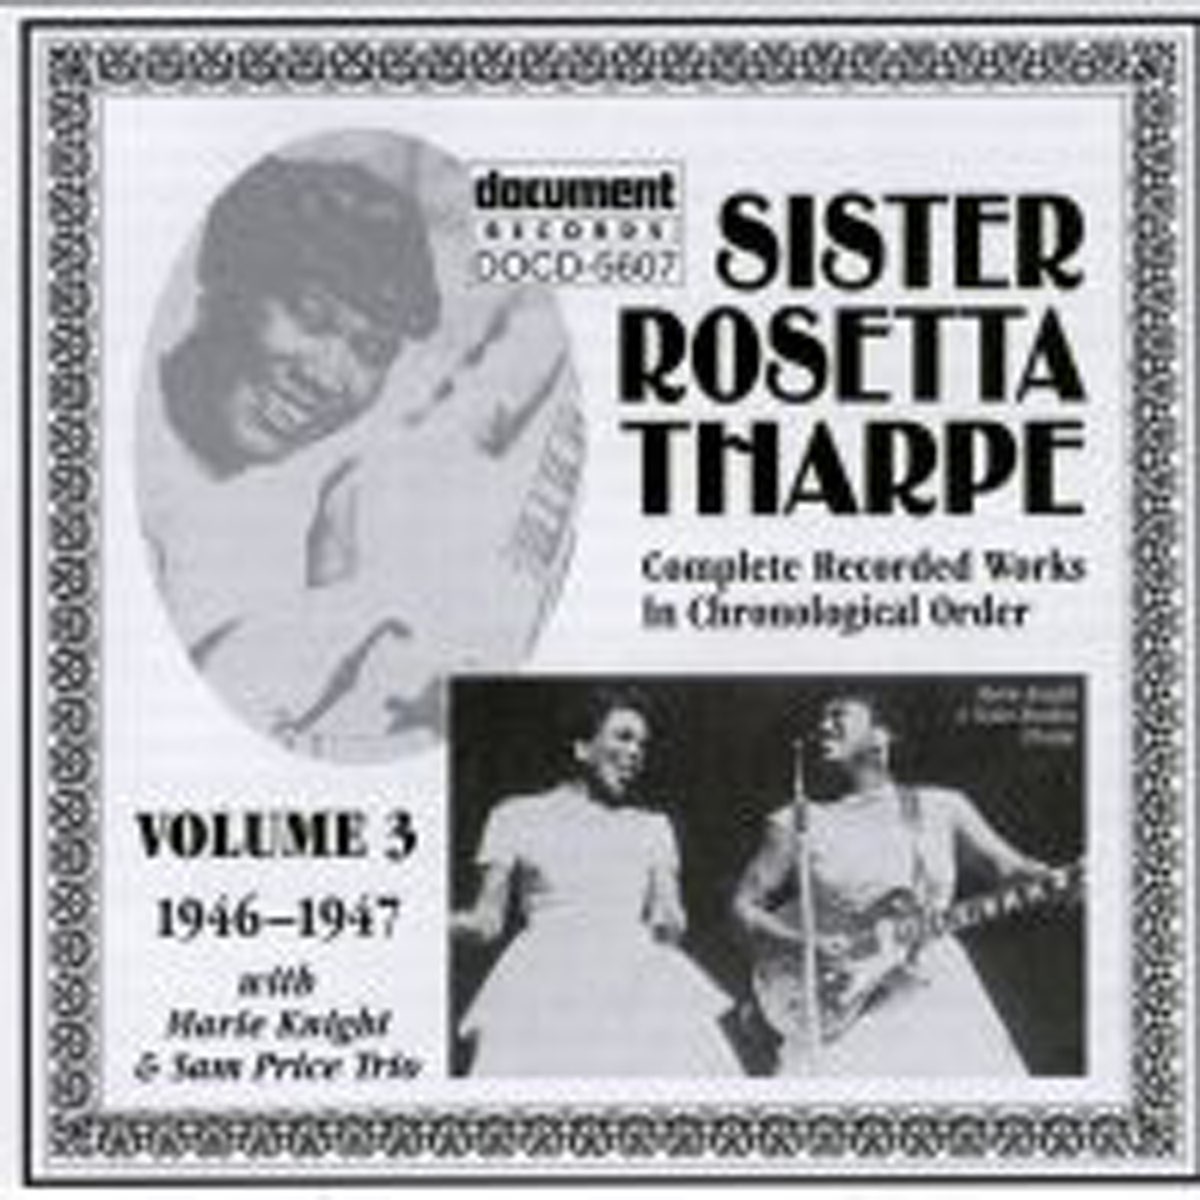 シスター ロゼッタ サープ CD 輸入盤 シスターロゼッタサープ Sister Rosetta Tharpe Live in 1960 アルバム  定番の人気シリーズPOINT(ポイント)入荷